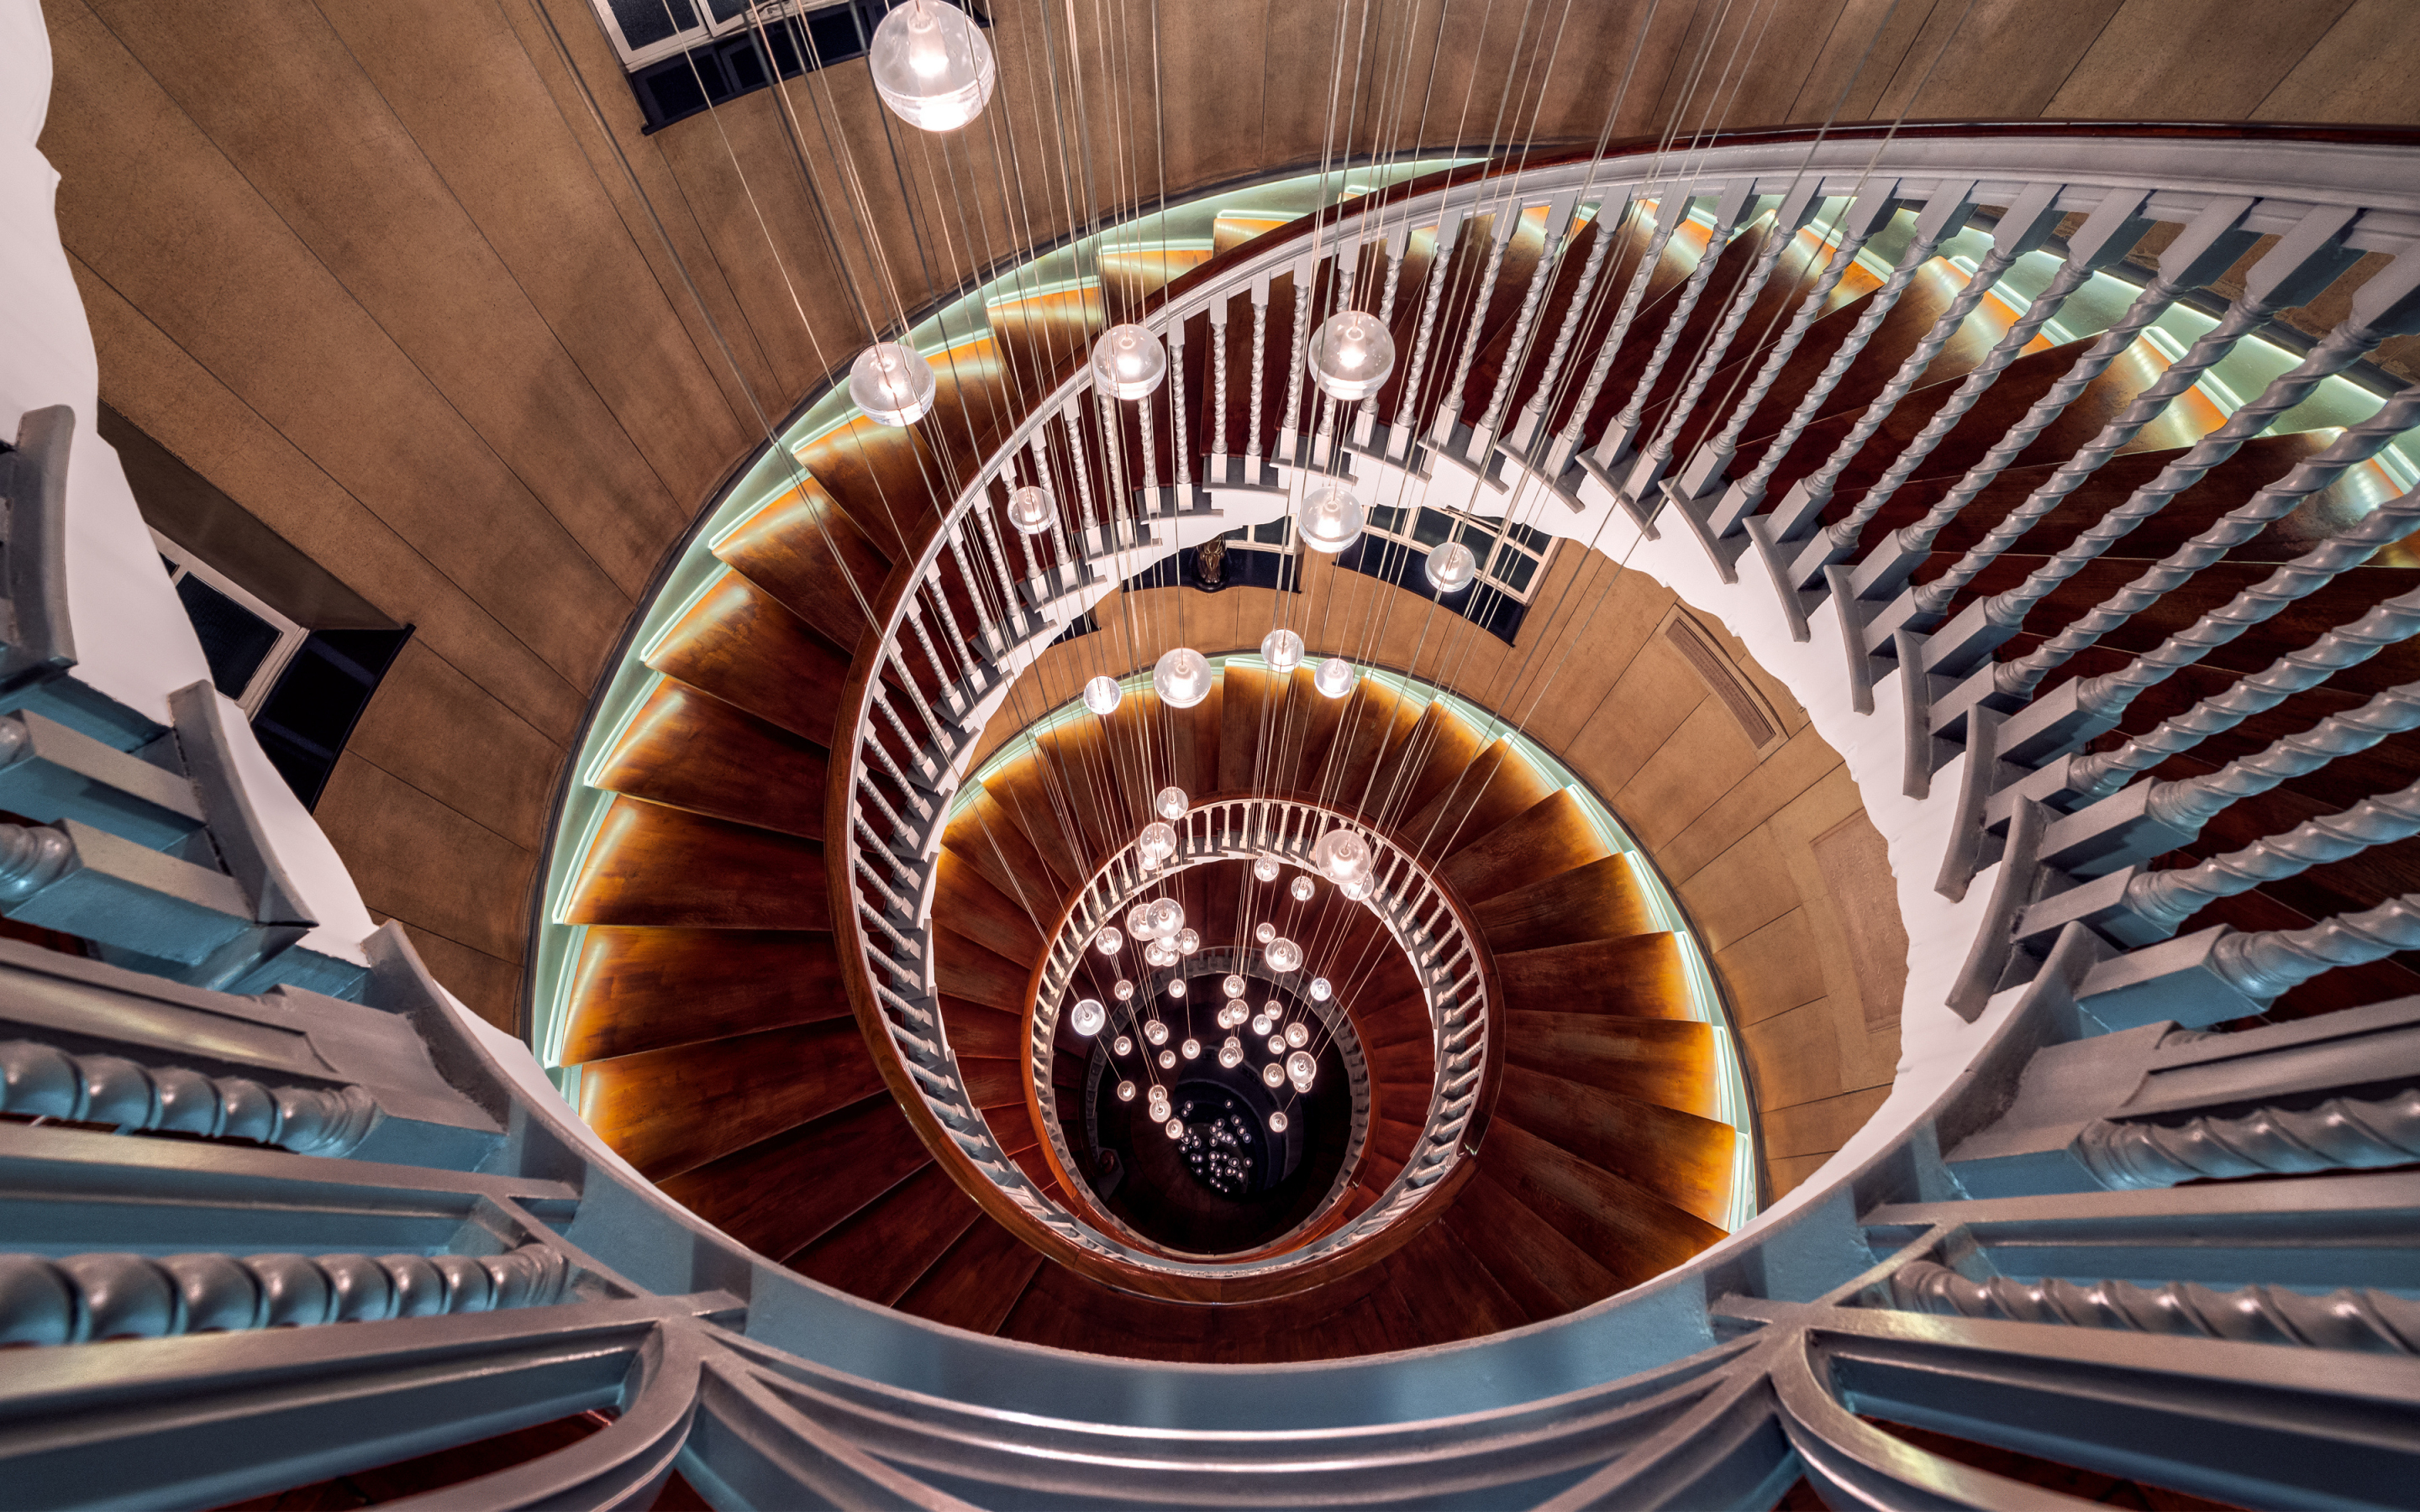 Spiral staircase, wooden, architecture, interior design, 2880x1800 wallpaper